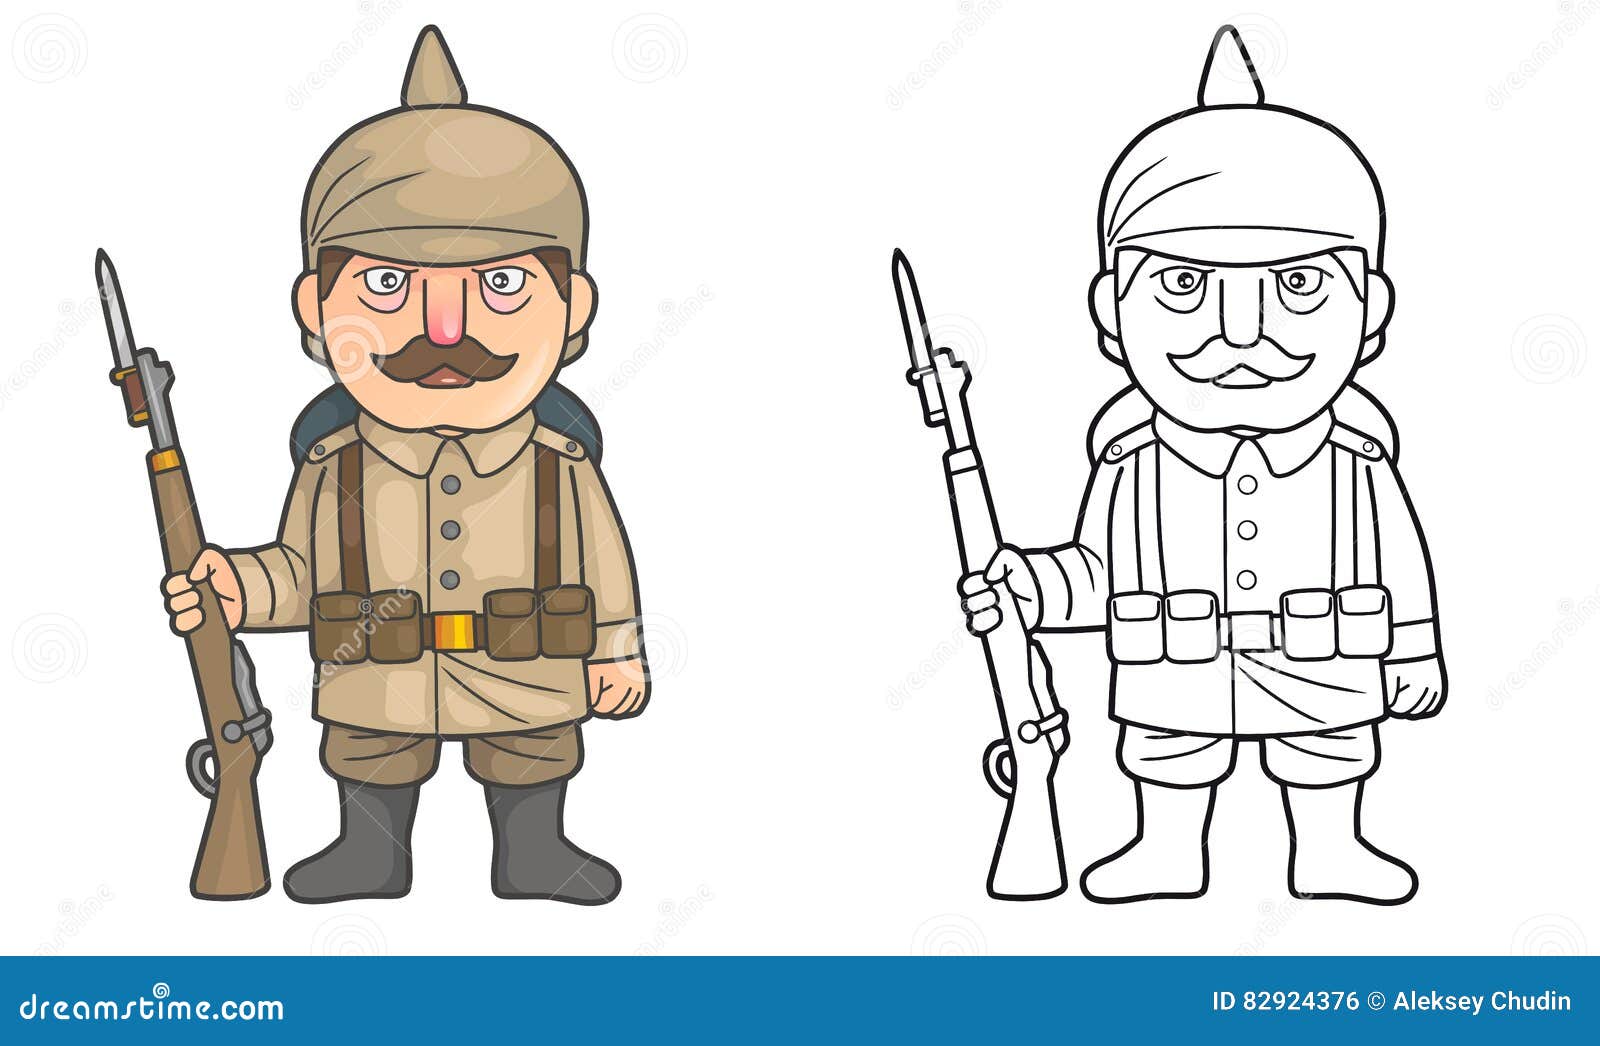 Cartoon German soldier during World War one